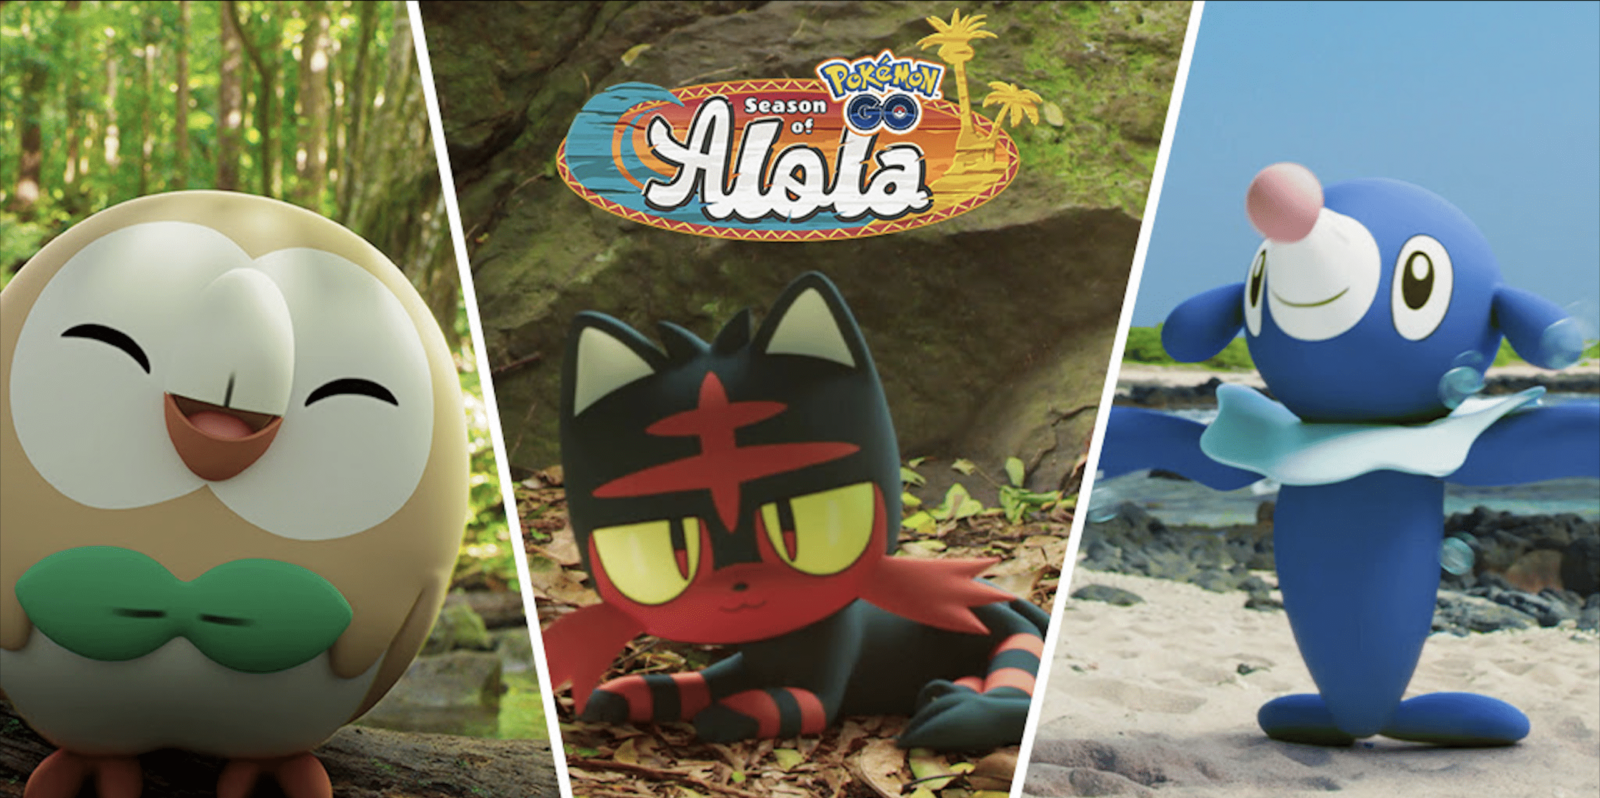 Al via oggi la Stagione di Alola su Pokemon Go: ecco le novità thumbnail